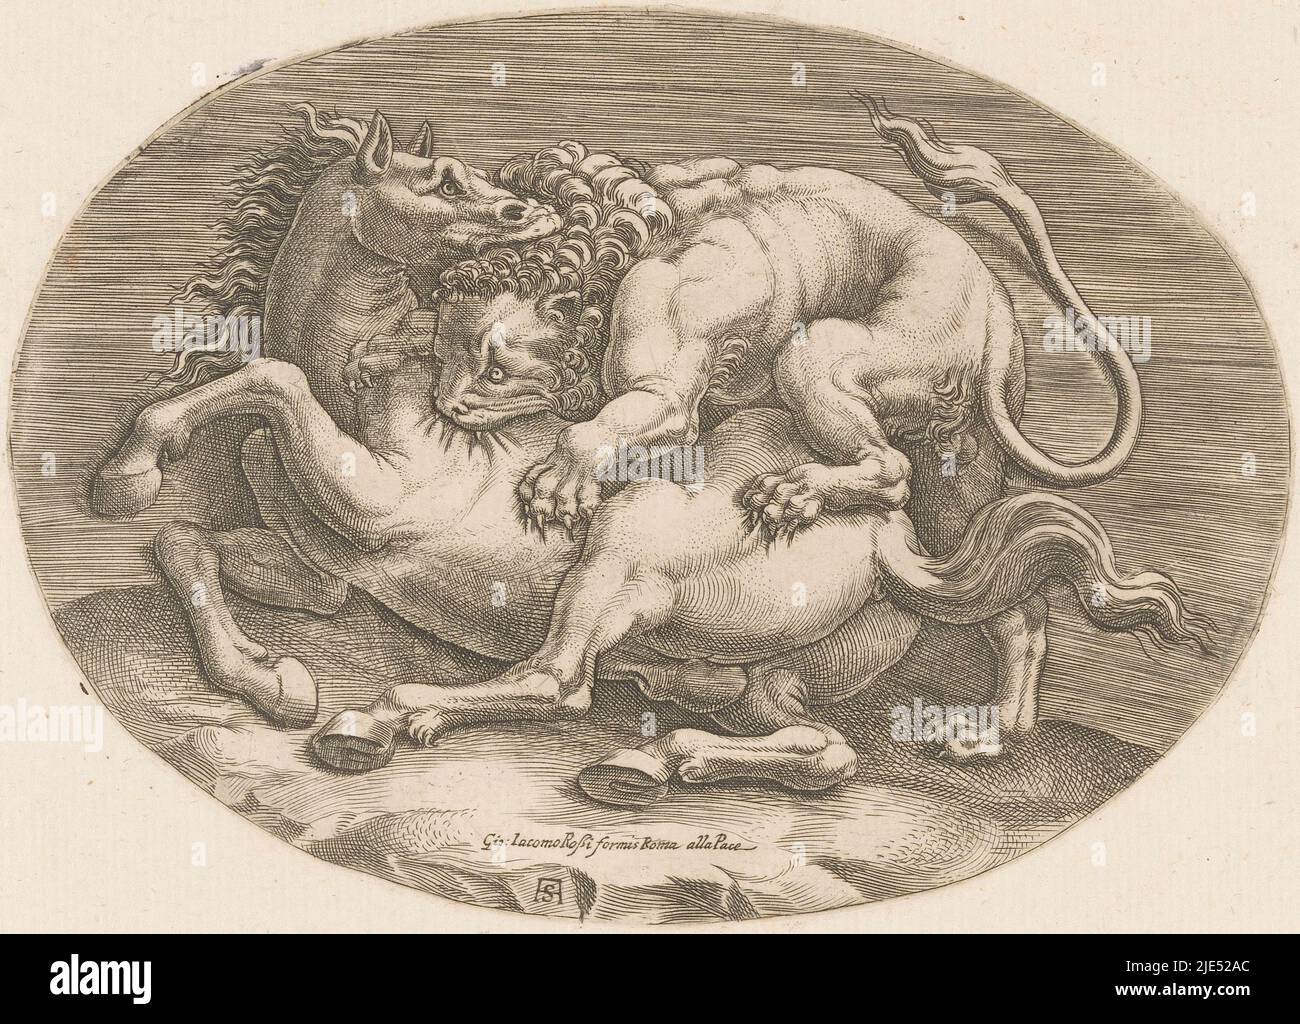 Un lion et un cheval dans la bataille. Dans une attaque, le lion a grimpé sur le cheval. Il s'est piqué dans la peau du cheval, tandis que le cheval mord la tête du lion., Horse attaqué par un lion., Imprimeur: Adamo Scultori, (mentionné sur l'objet), dessinateur intermédiaire: Giulio Romano, (peut-être), anonyme, dessinateur: Italie, dessinateur intermédiaire: Italie, Rome, c. 1540 - c. 1585, papier, gravure, h 131 mm - l 183 mm Banque D'Images